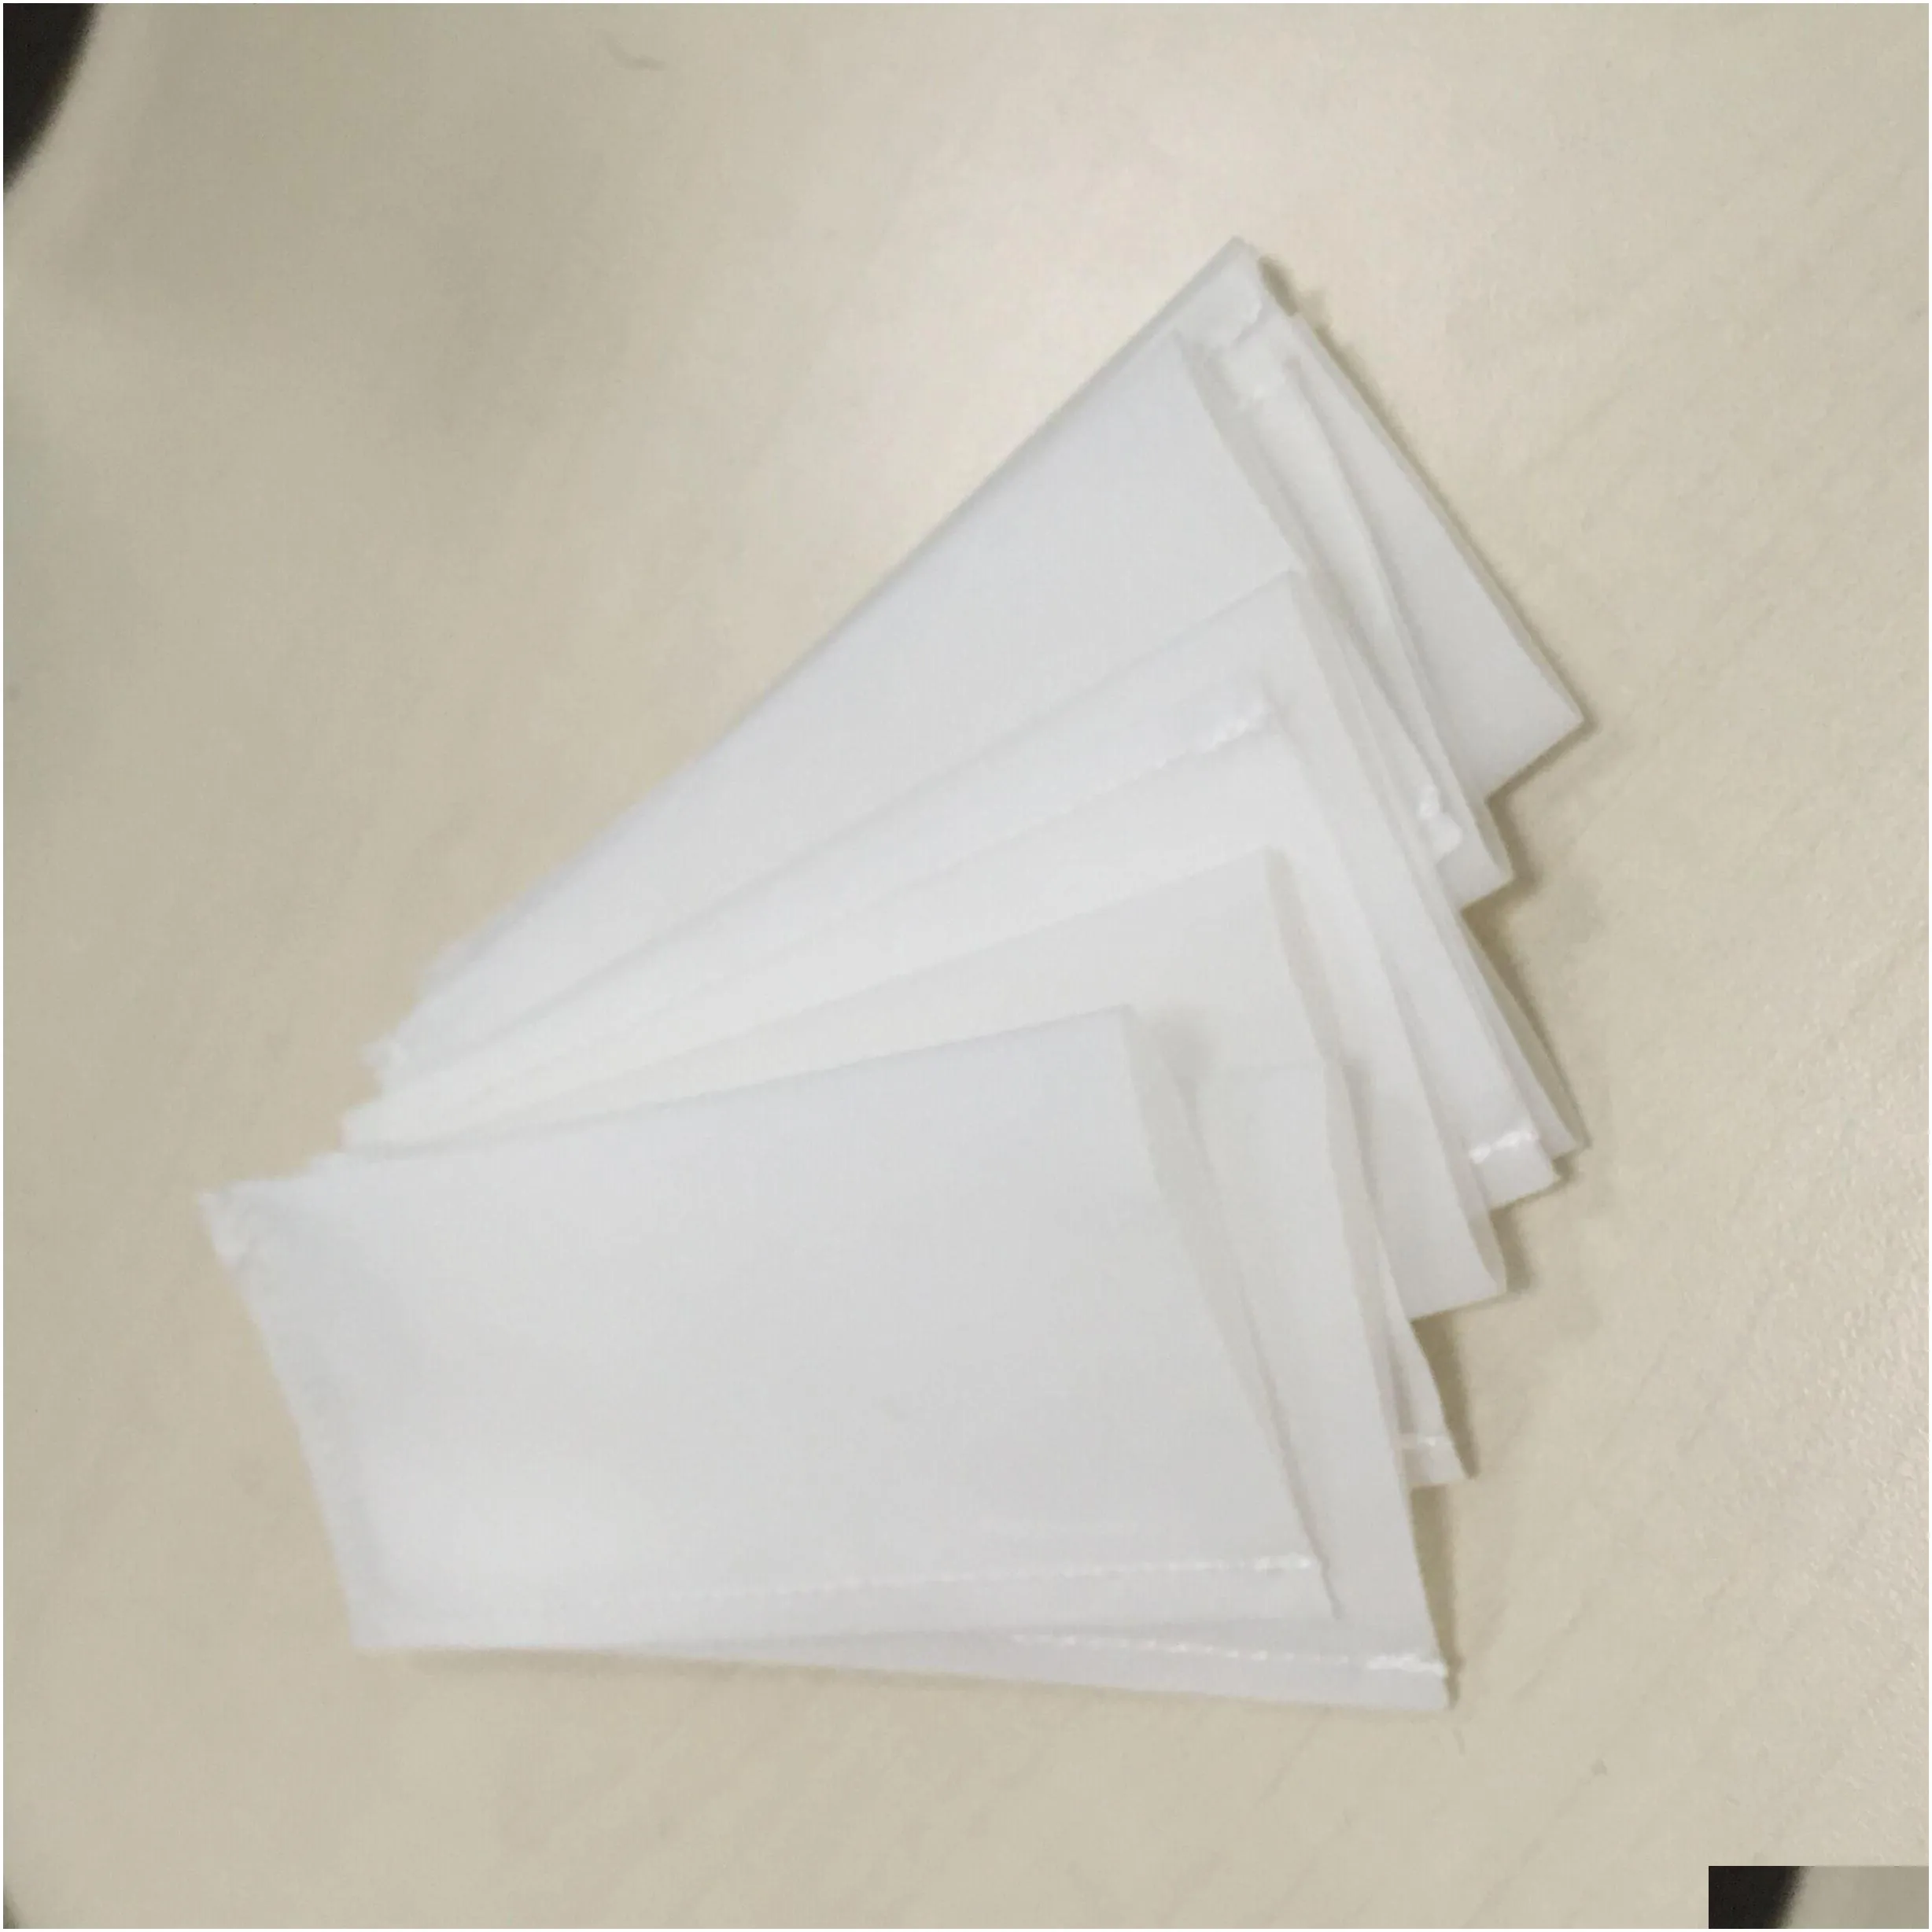 2021 new 3 x 6 inch 25 micron rosin press bags 25 micron rosin bags